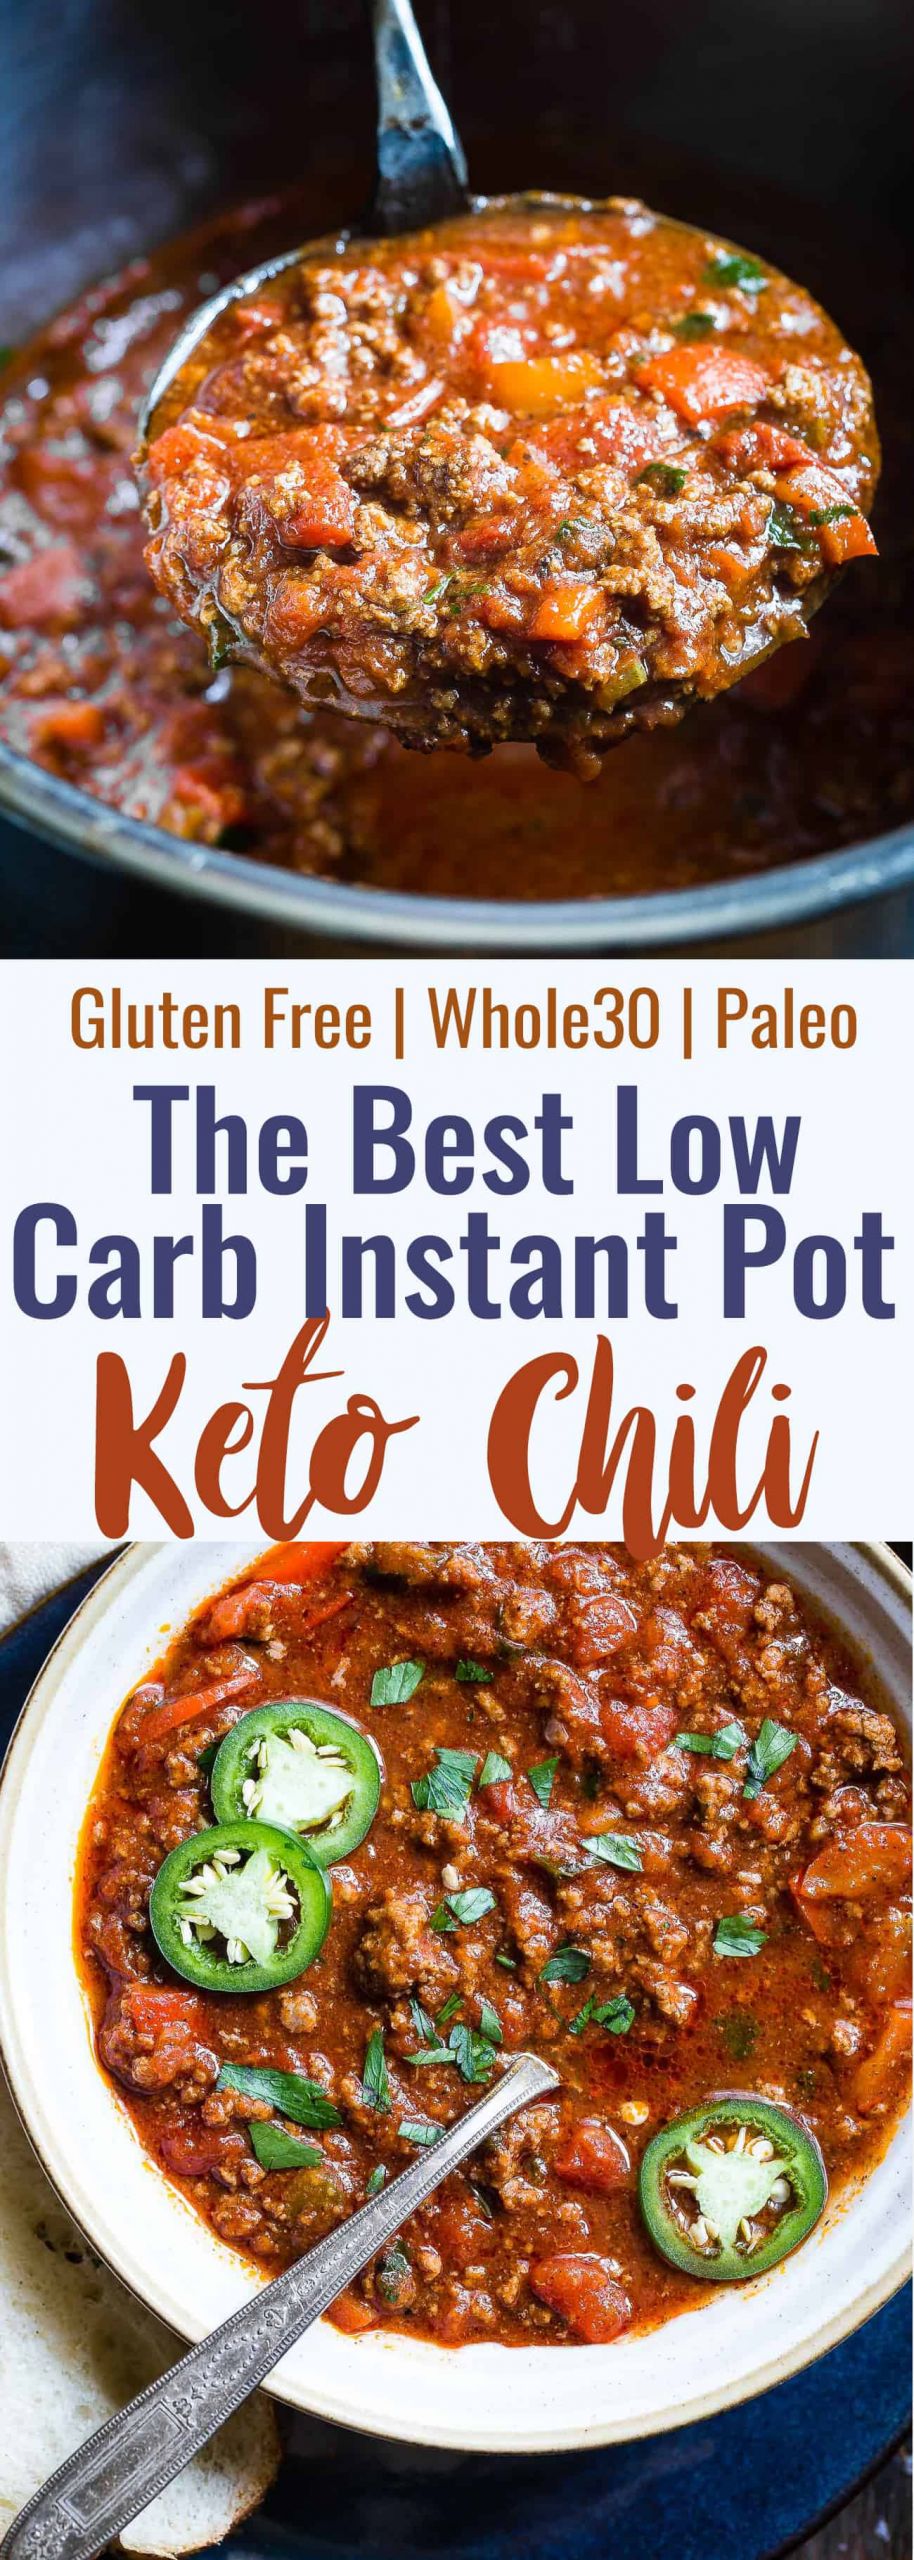 Instapot Keto Chili
 No Bean Whole30 Keto Chili in the Instant Pot Paleo